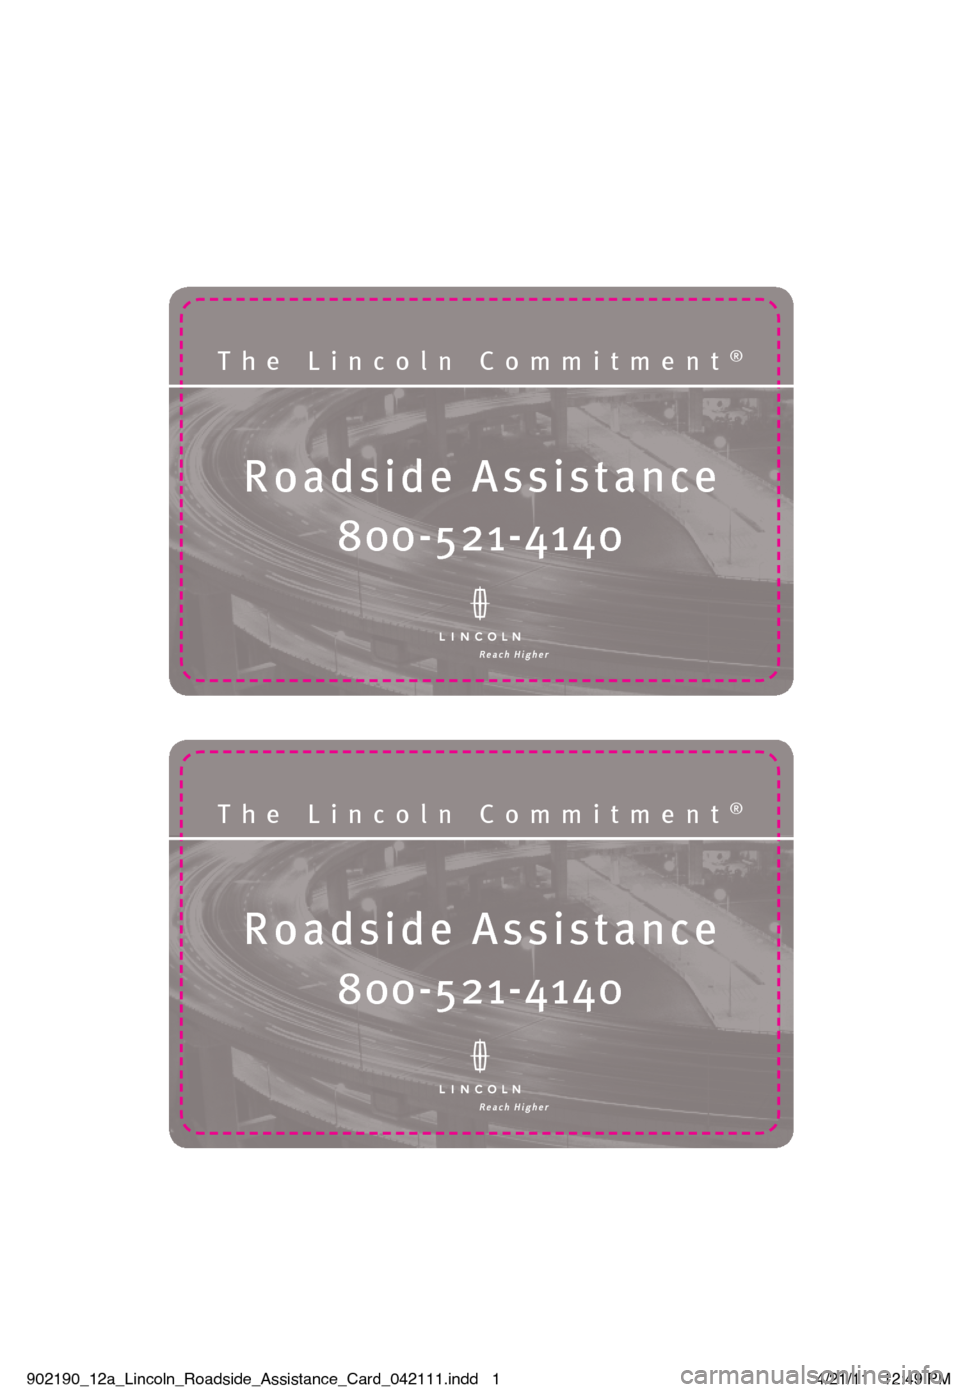 LINCOLN NAVIGATOR 2012  Roadside Assistance Card Roadside Assistanc\®e
The Lincoln Commit\®ment®
\f00-5\b1-4140
Roadside Assistanc\®e
The Lincoln Commit\®ment®
\f00-5\b1-4140
902190_12a_Lincoln_Roadside_Assistance_Card_042111.indd   14/21/11  